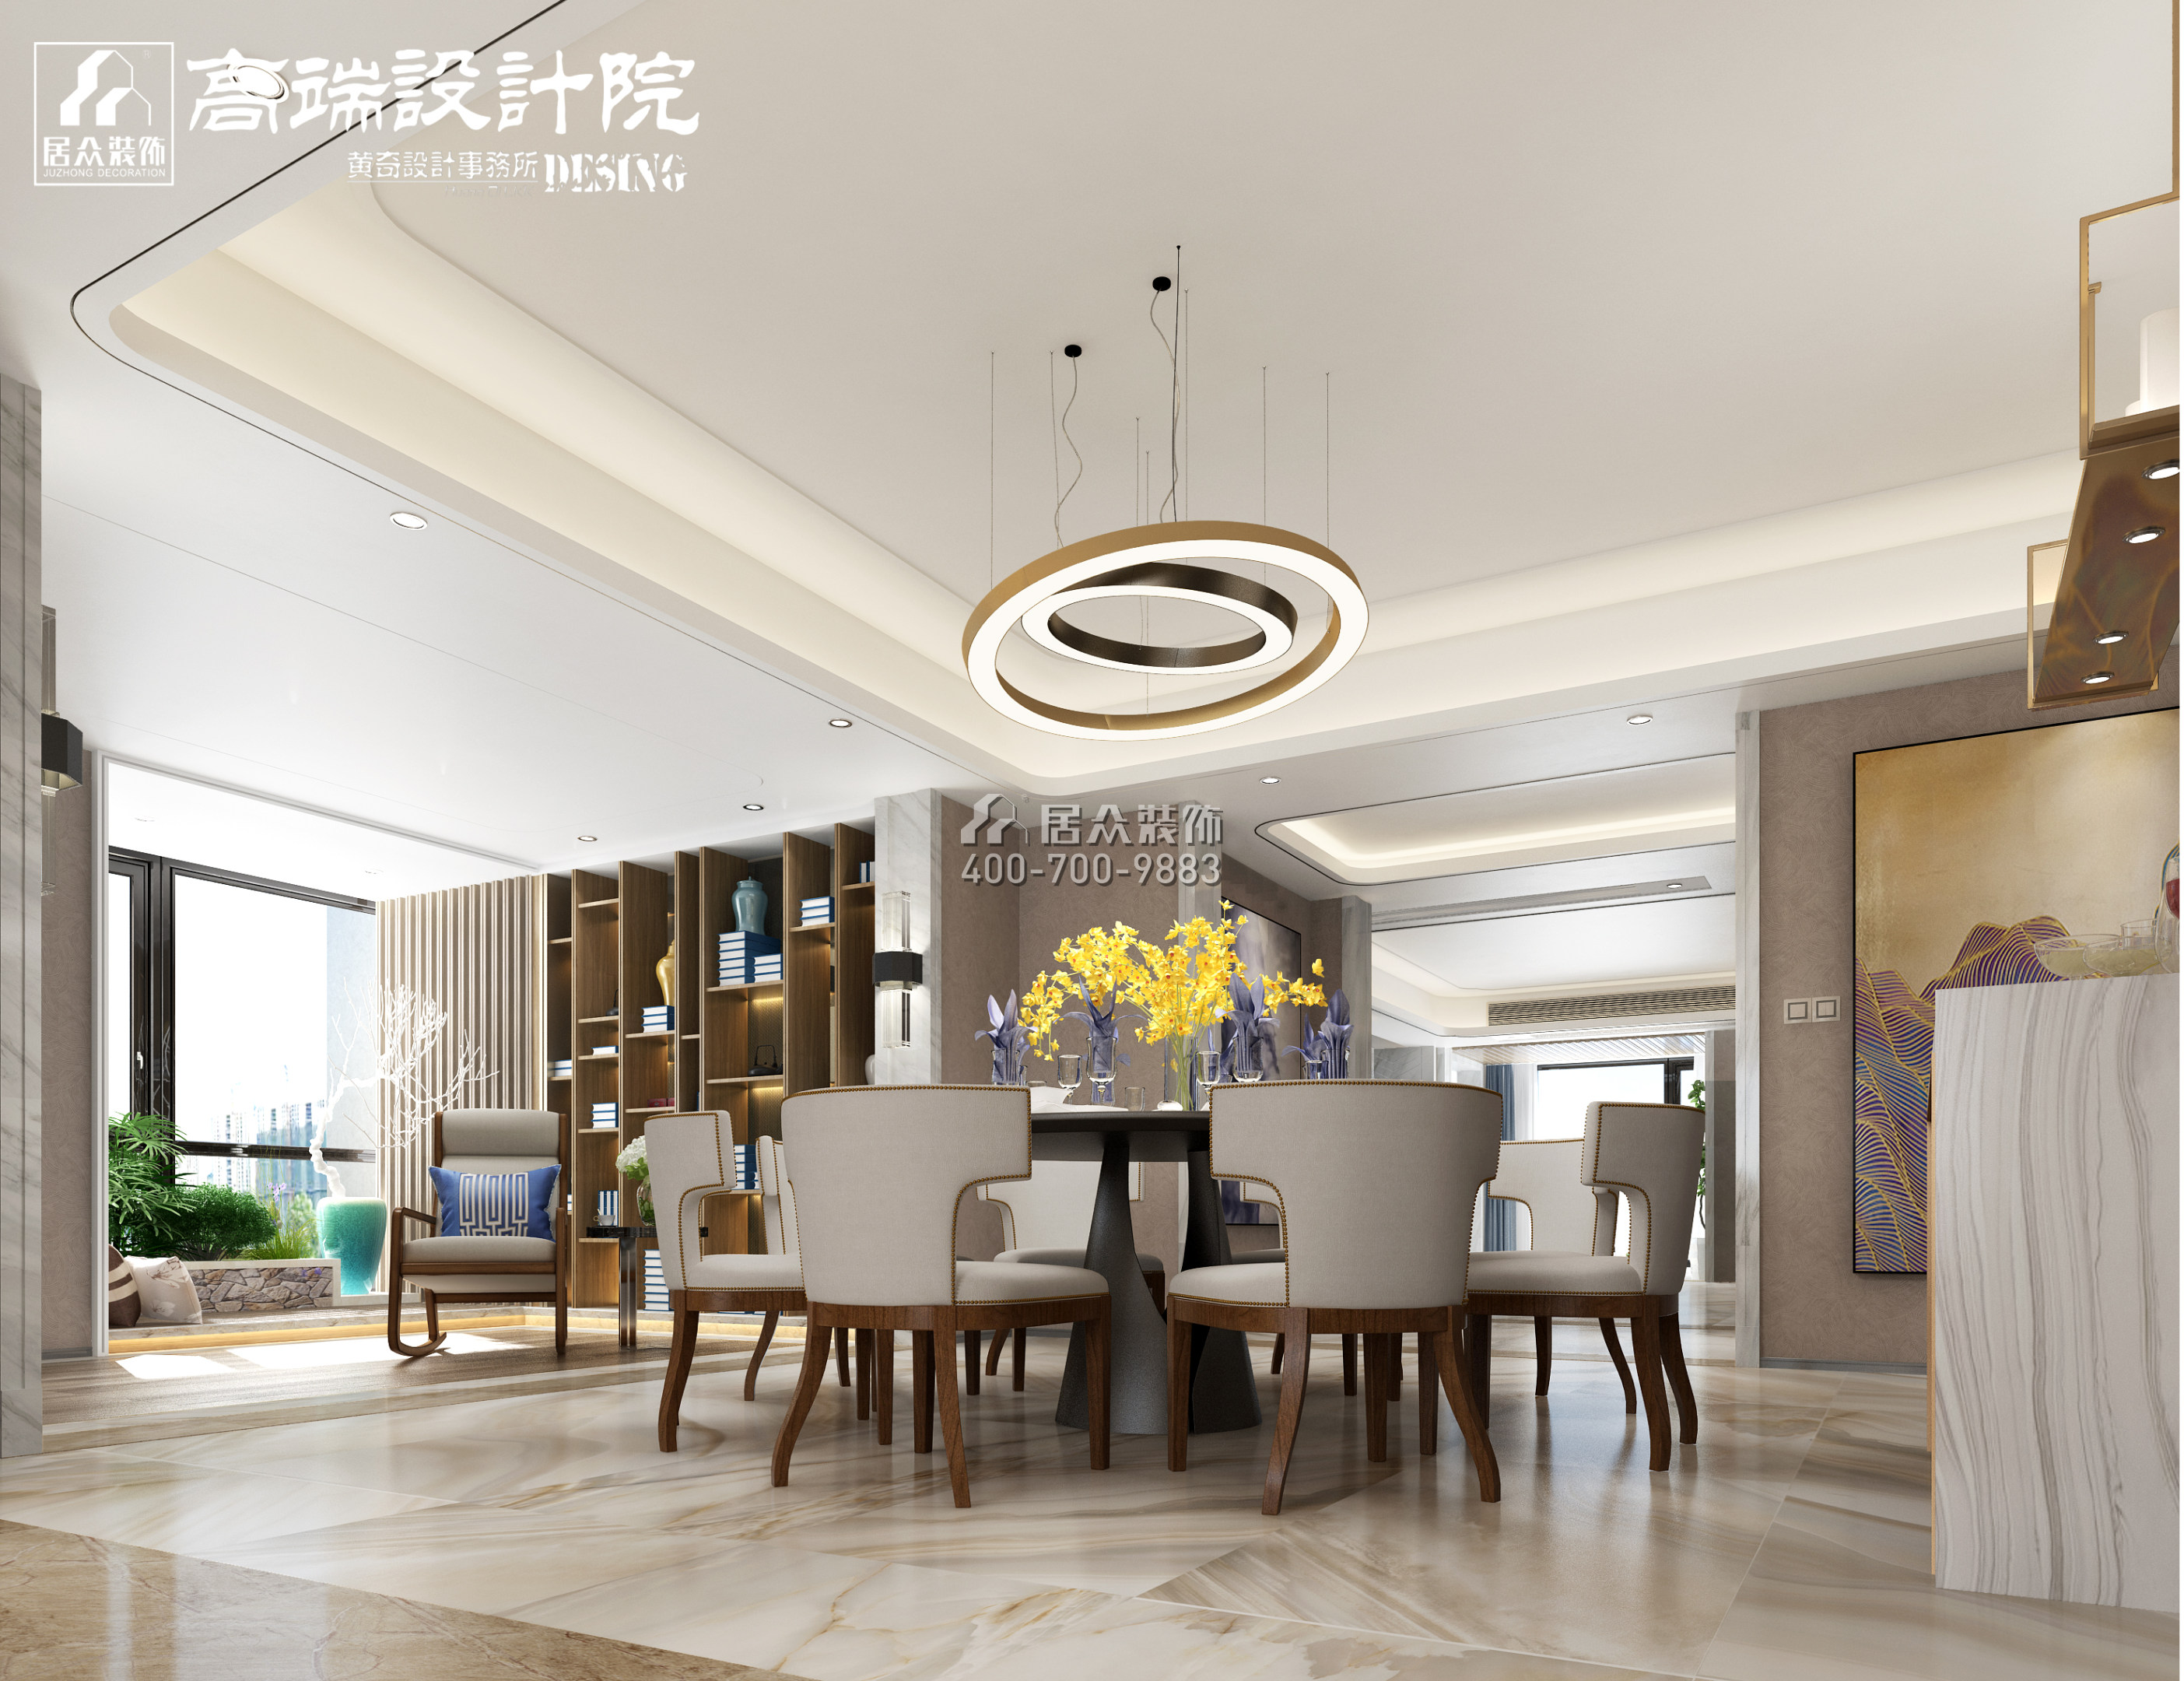 湘江一号320平方米现代简约风格平层户型餐厅装修效果图